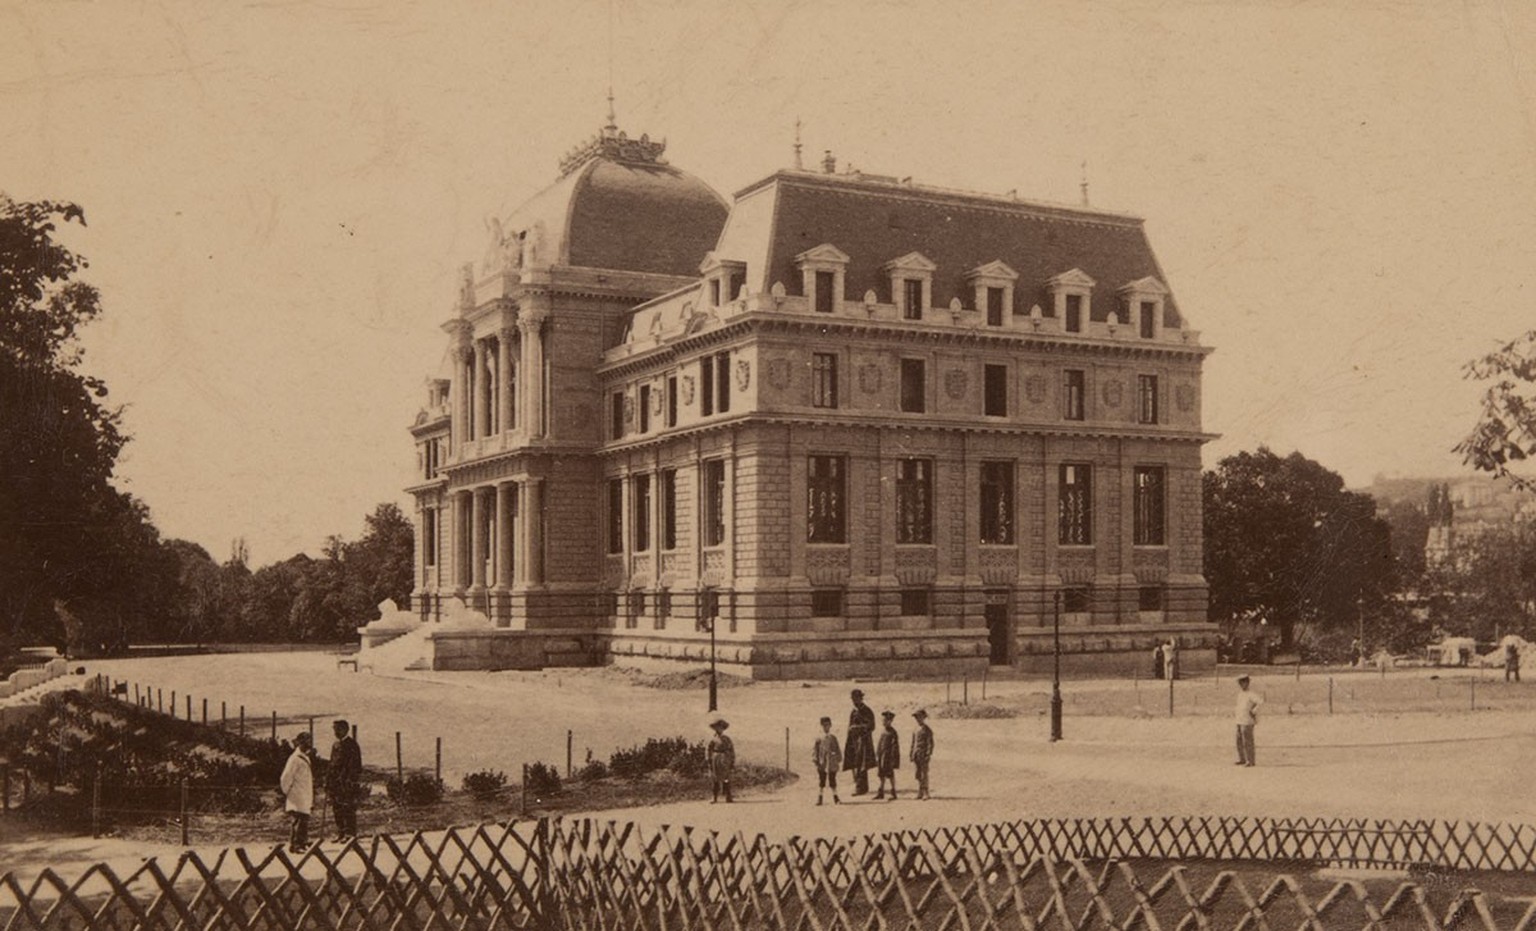 Le Tribunal fédéral à Lausanne sur une photo de 1898.
https://permalink.nationalmuseum.ch/100477376